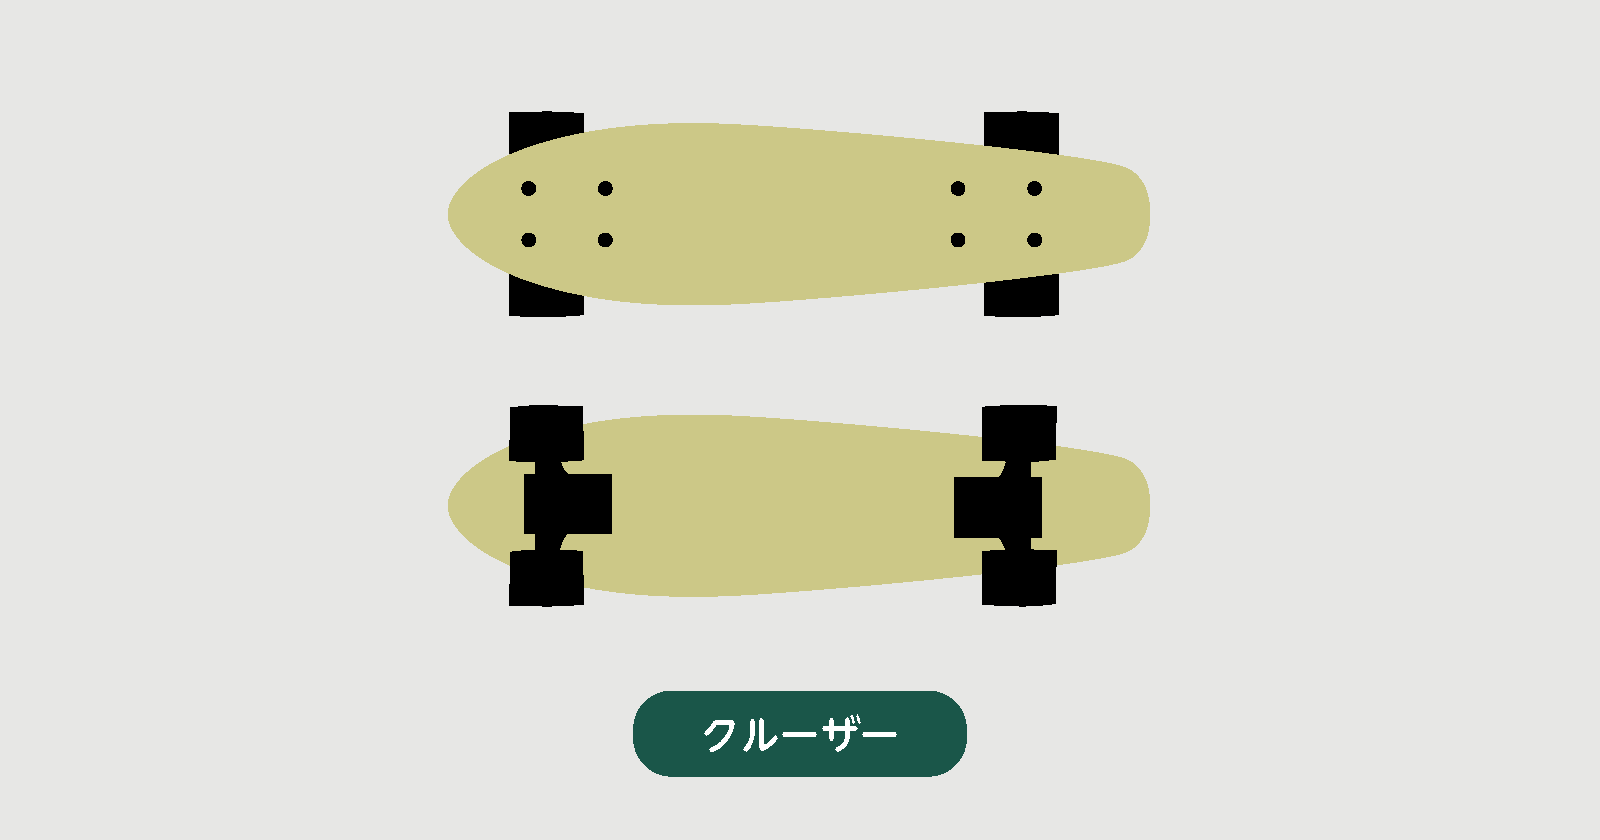 スケートボードの種類～目的別選び方～ - Green Summit (グリーンサミット) “外遊び”がコンセプトのセレクトショップ